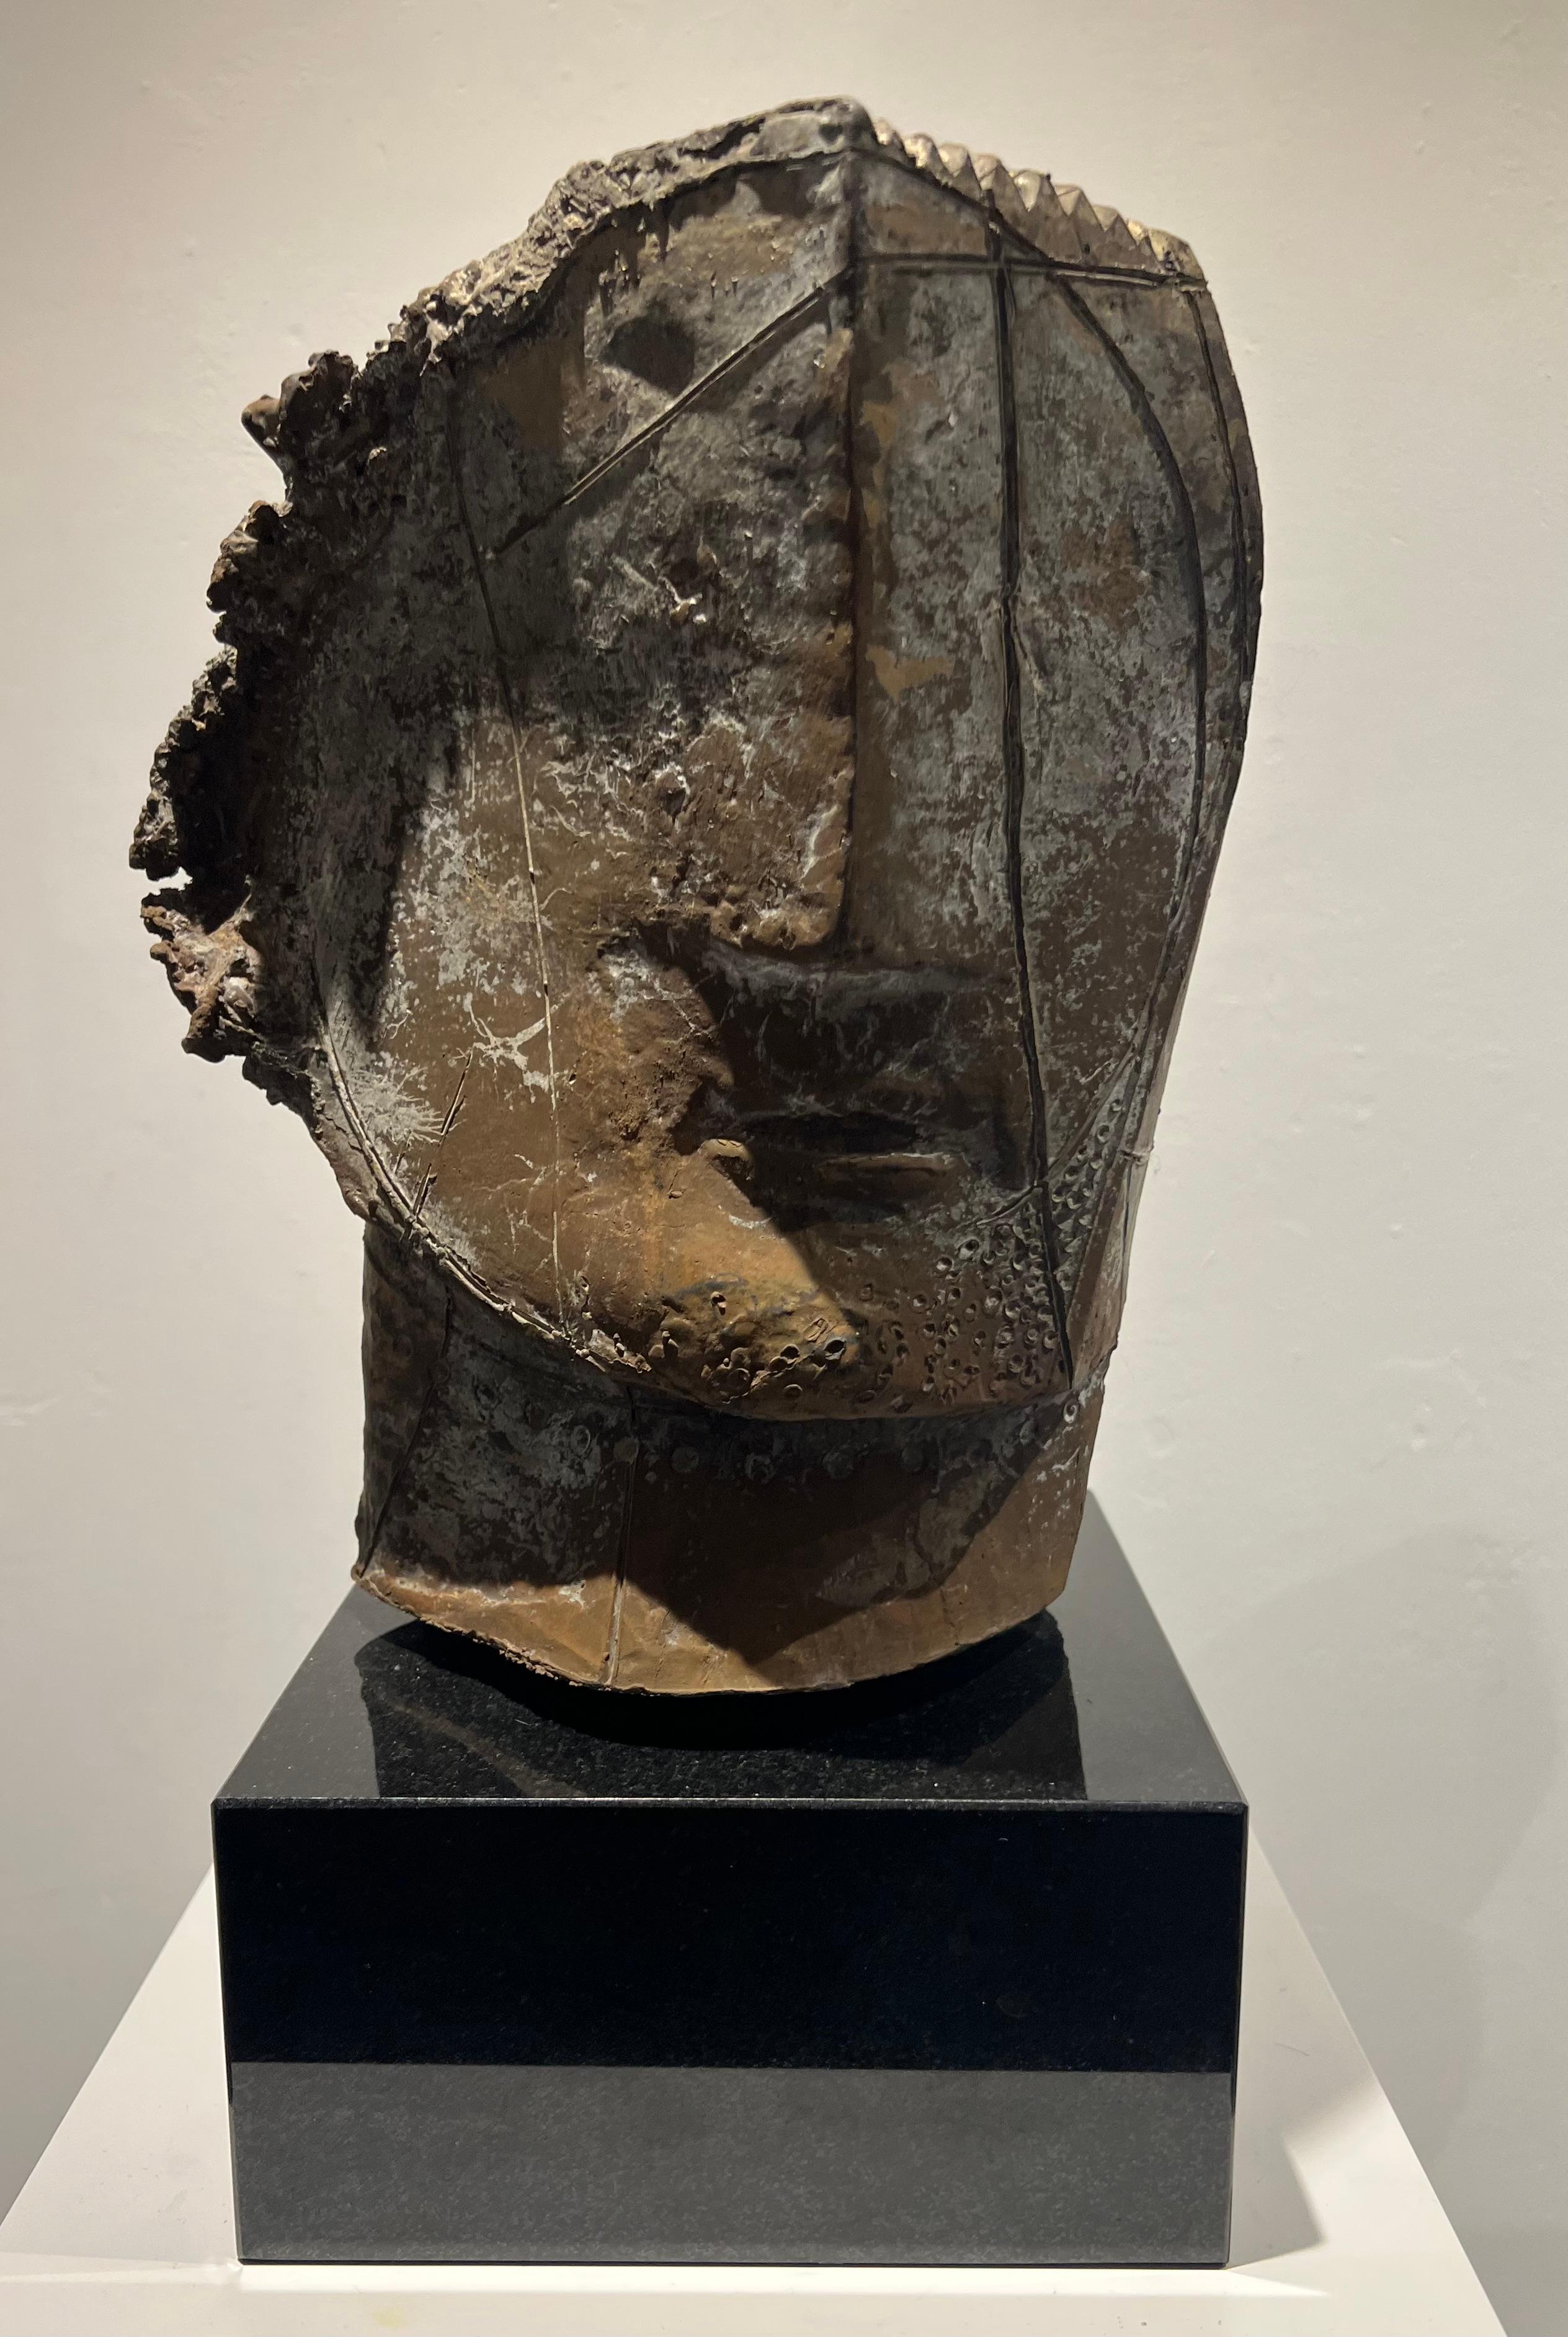 Tête abstraite sculptée en bronze, cercle intérieur coulé, édition limitée - Sculpture de Thomas Junghans